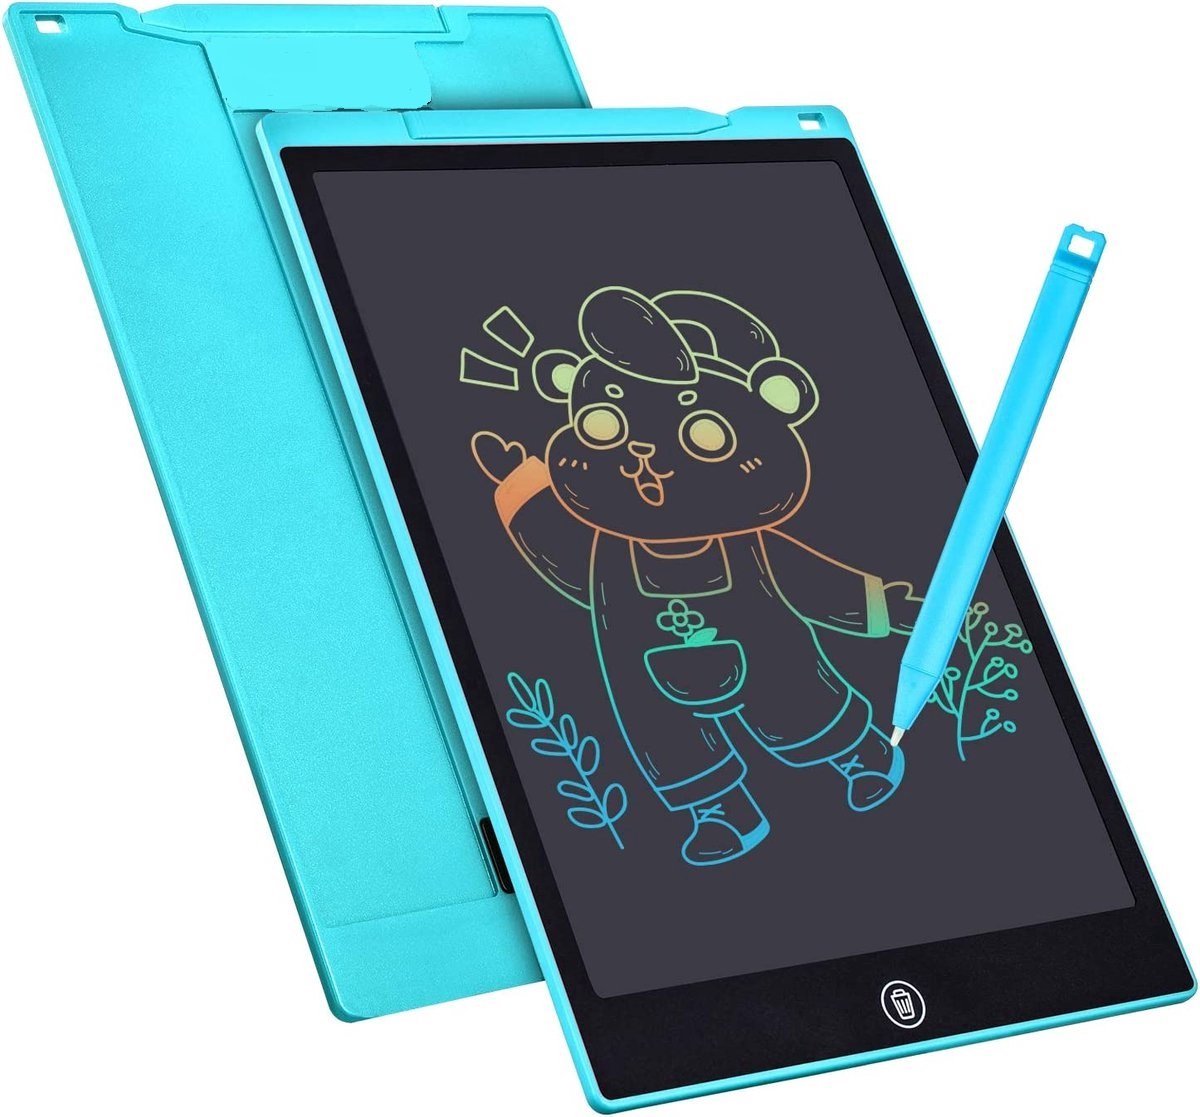 LCD Tekentablet Kinderen - 8,5 inch - Ewriter - Notitieblok - Tekenbord Kinderen - Drawing table - Teken iPad - Papierloos tekenen - Tekenbord - digitaal tekenen - baby blauw - leren tekenen - tekenset - Sinterklaas cadeau - Kerst 2023